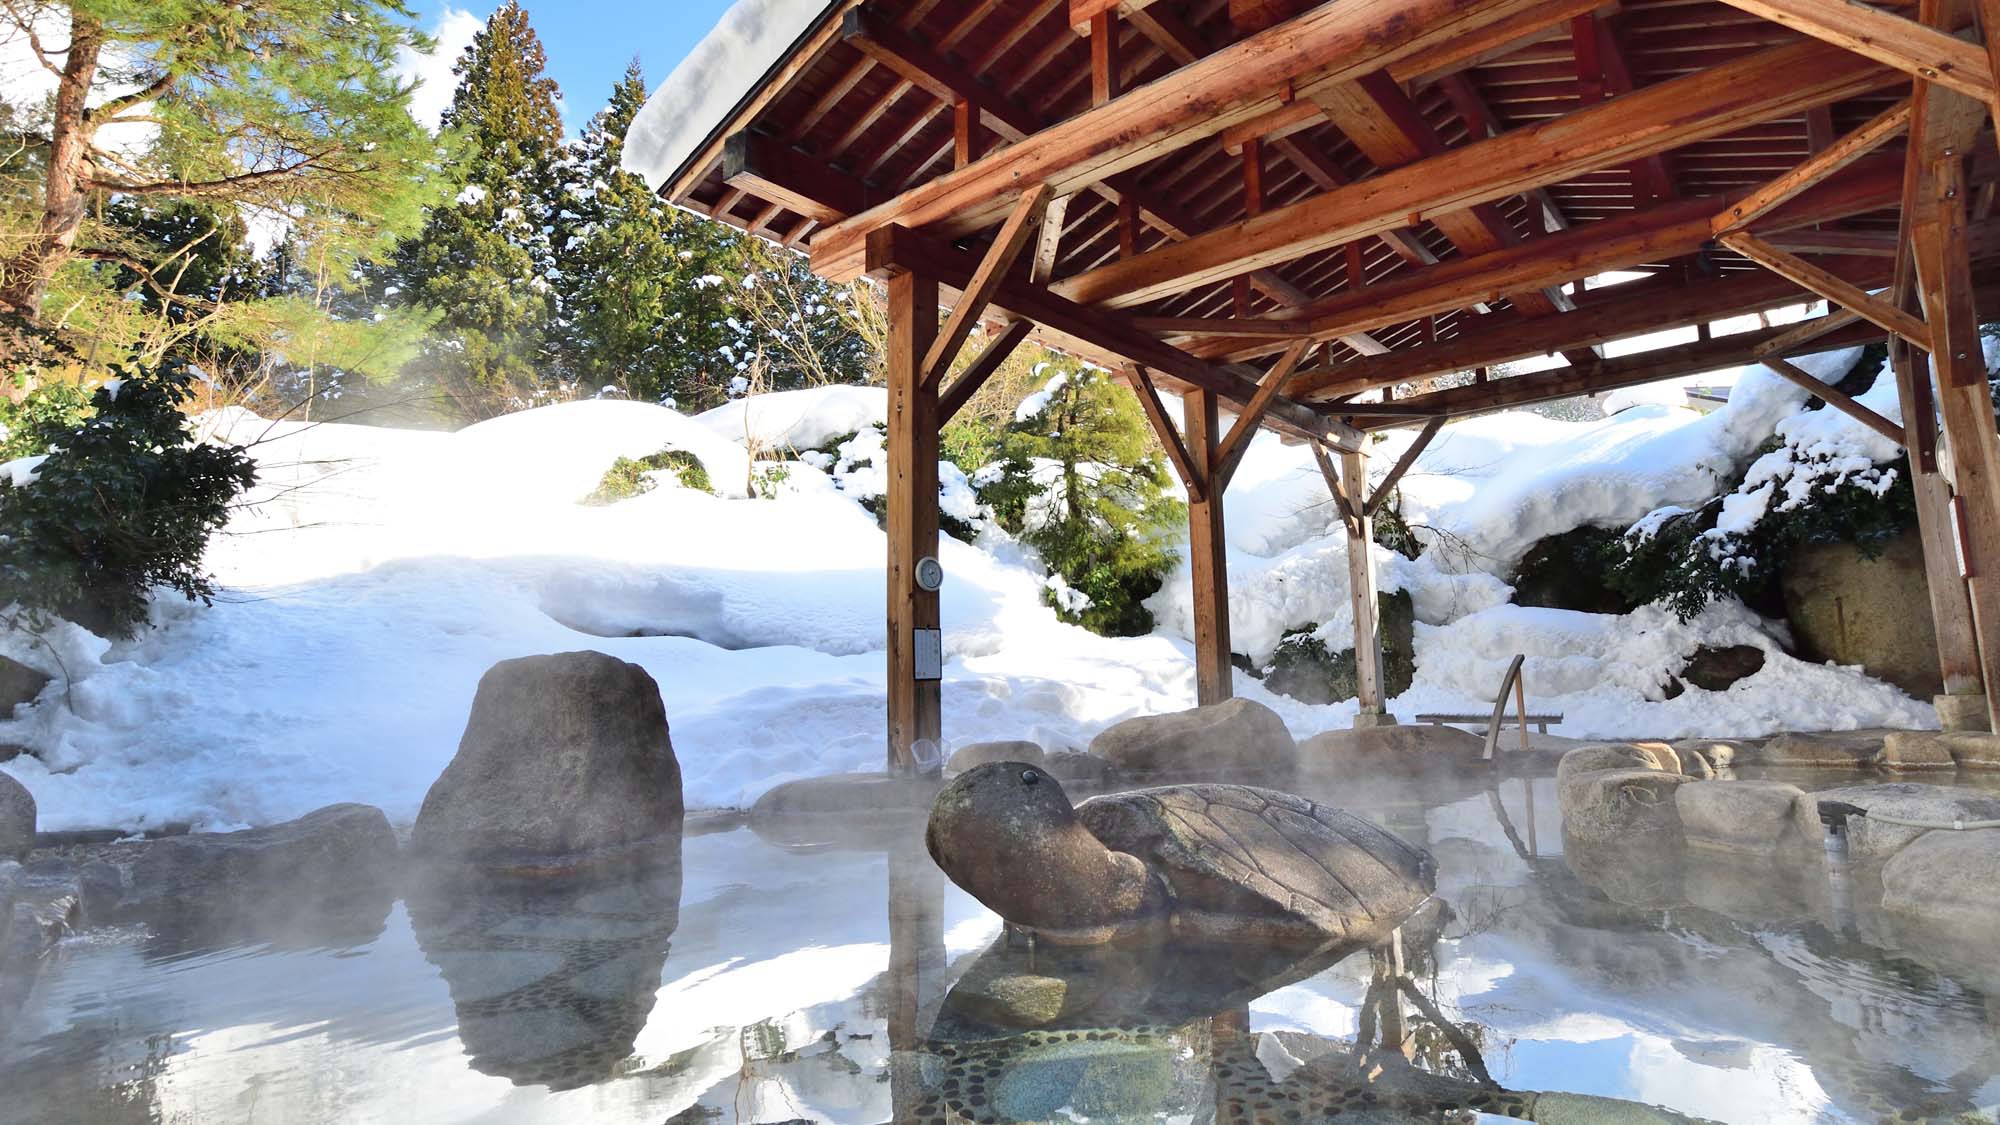 【大露天風呂冬】青空と雪のコントラストが美しい冬の露天風呂